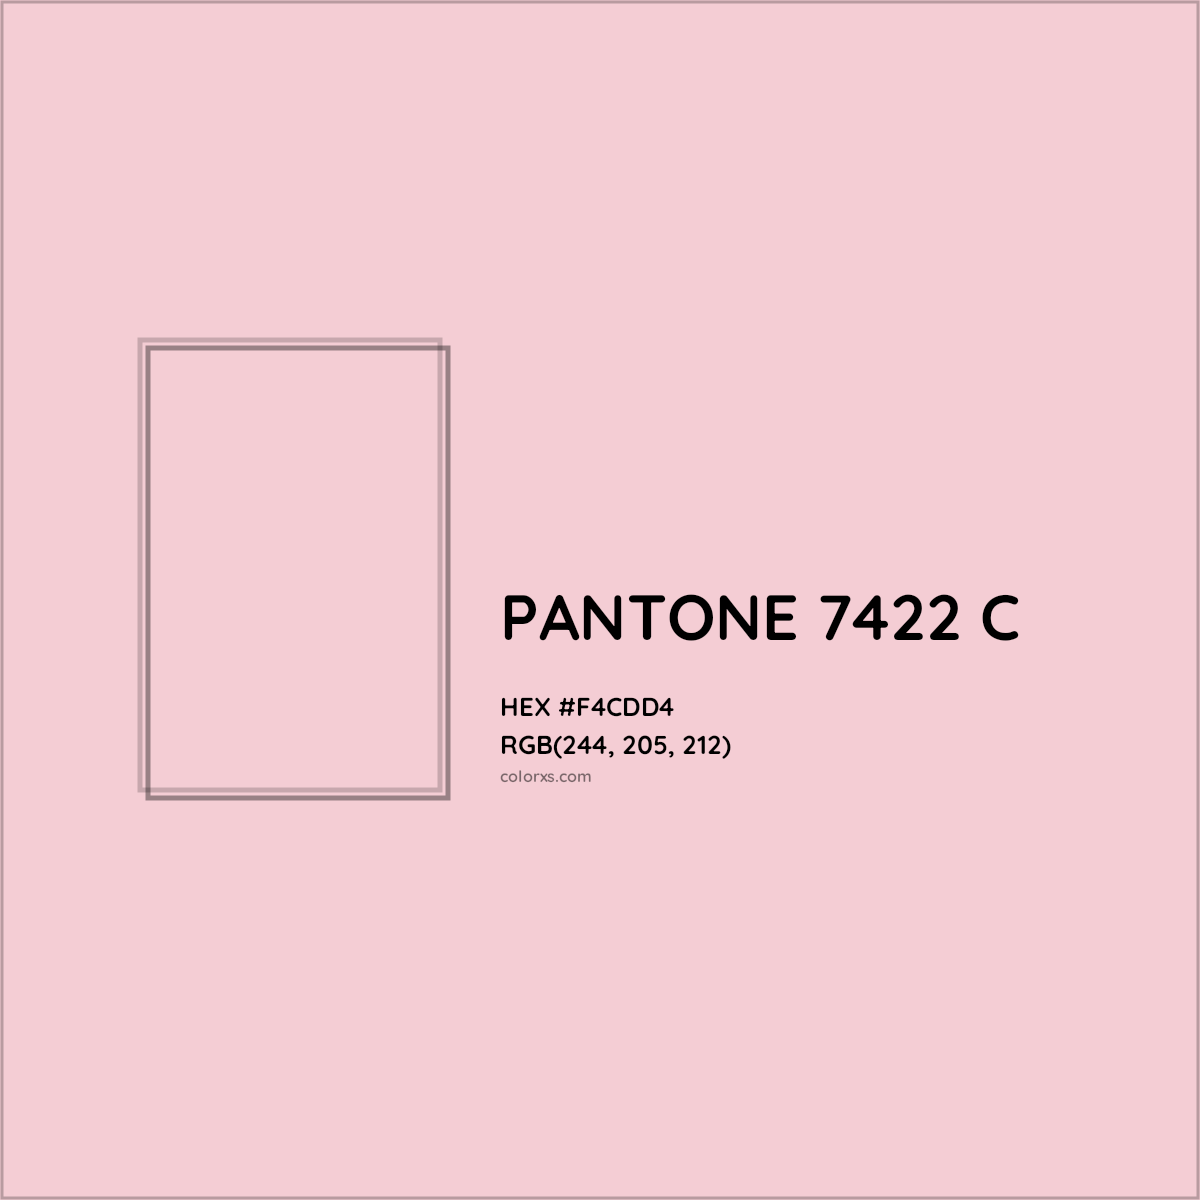 HEX #F4CDD4 PANTONE 7422 C CMS Pantone PMS - Color Code